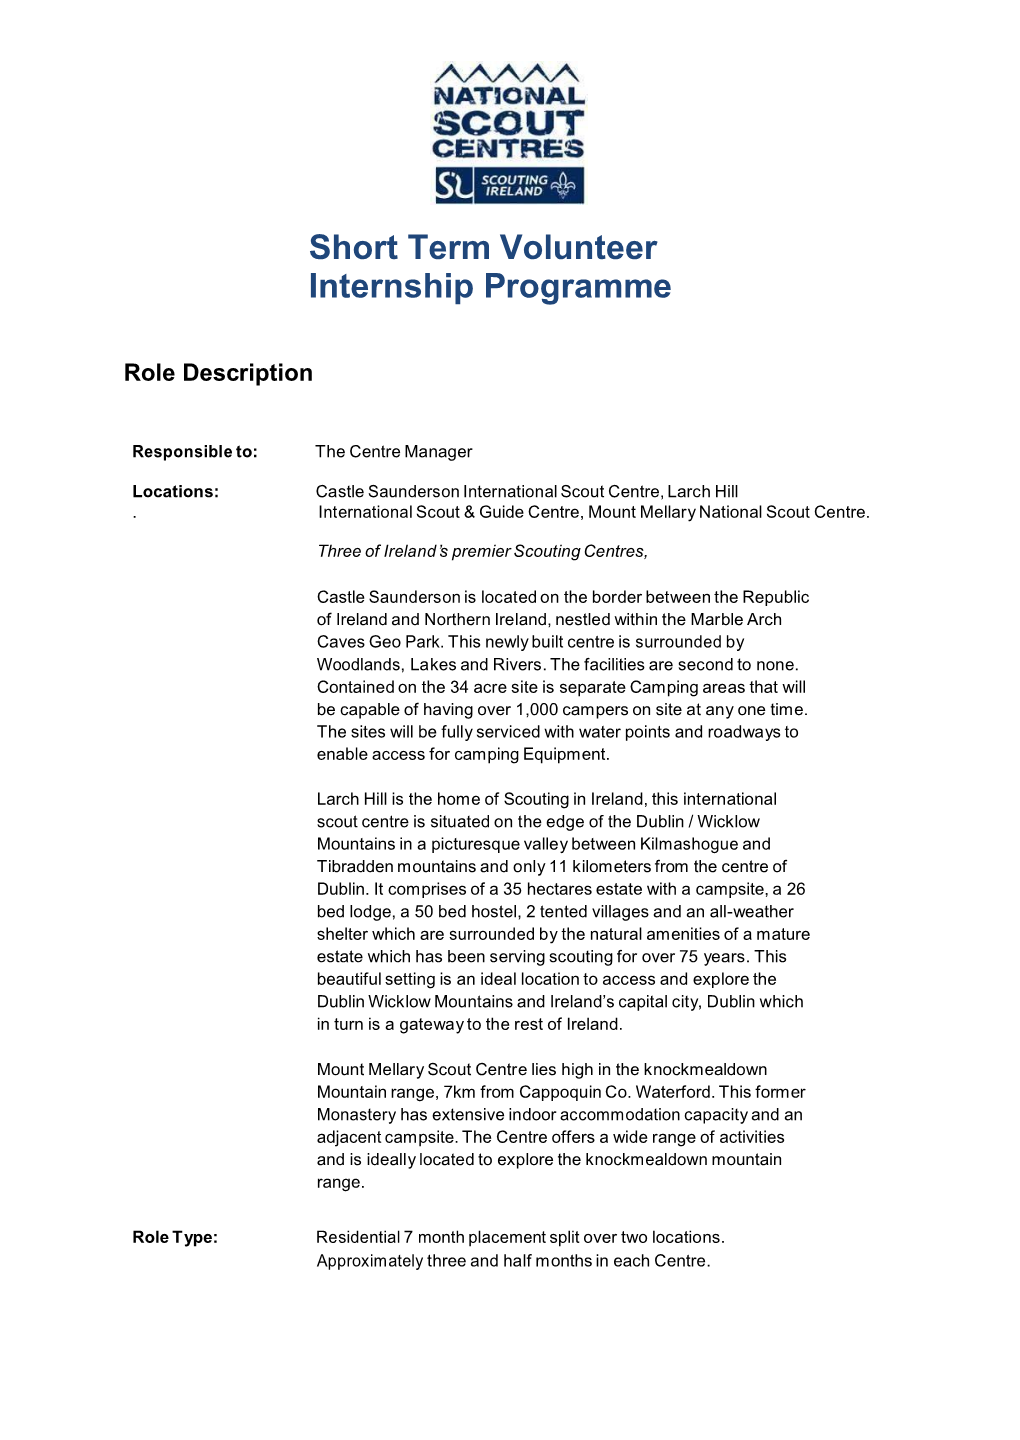 Short Term Volunteer Internship Programme